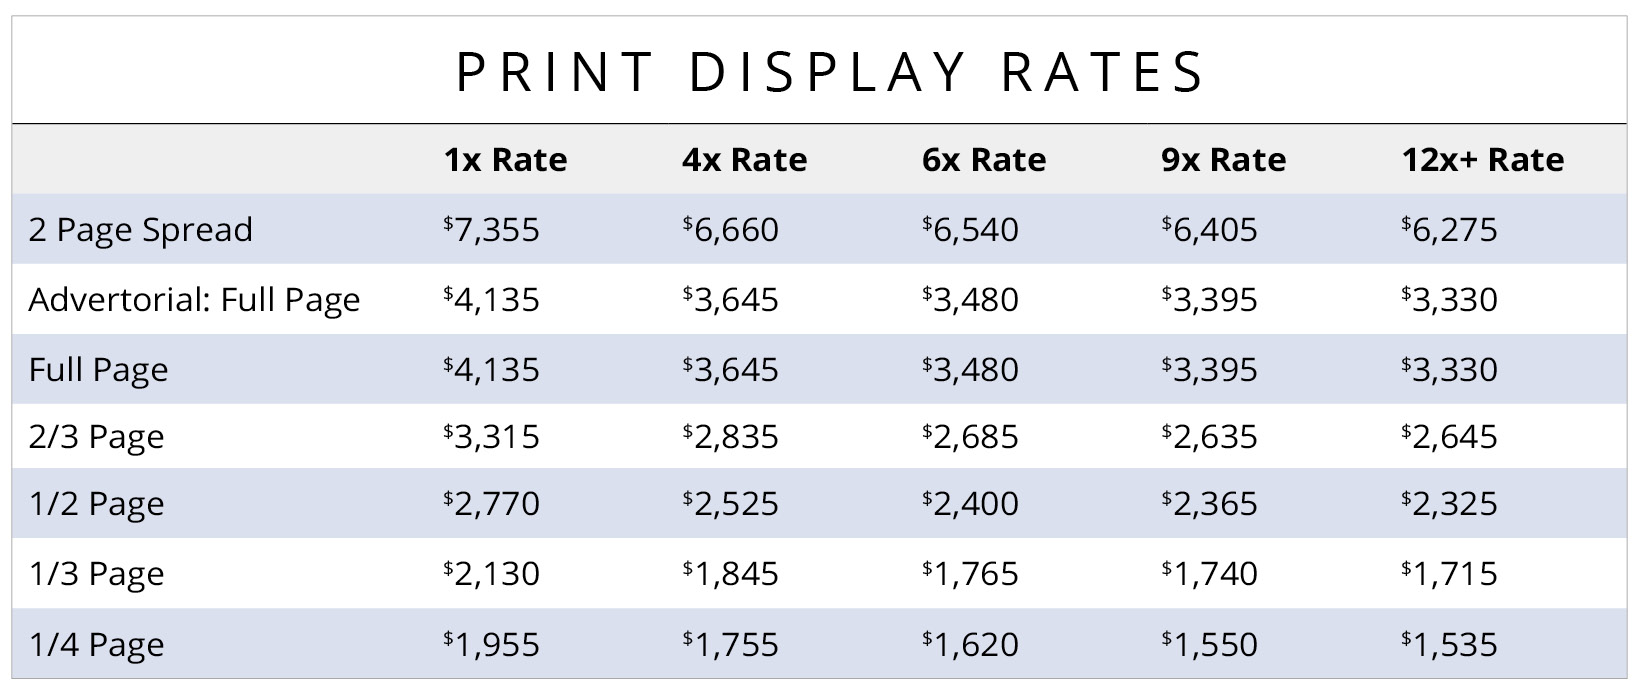 print-display-rates